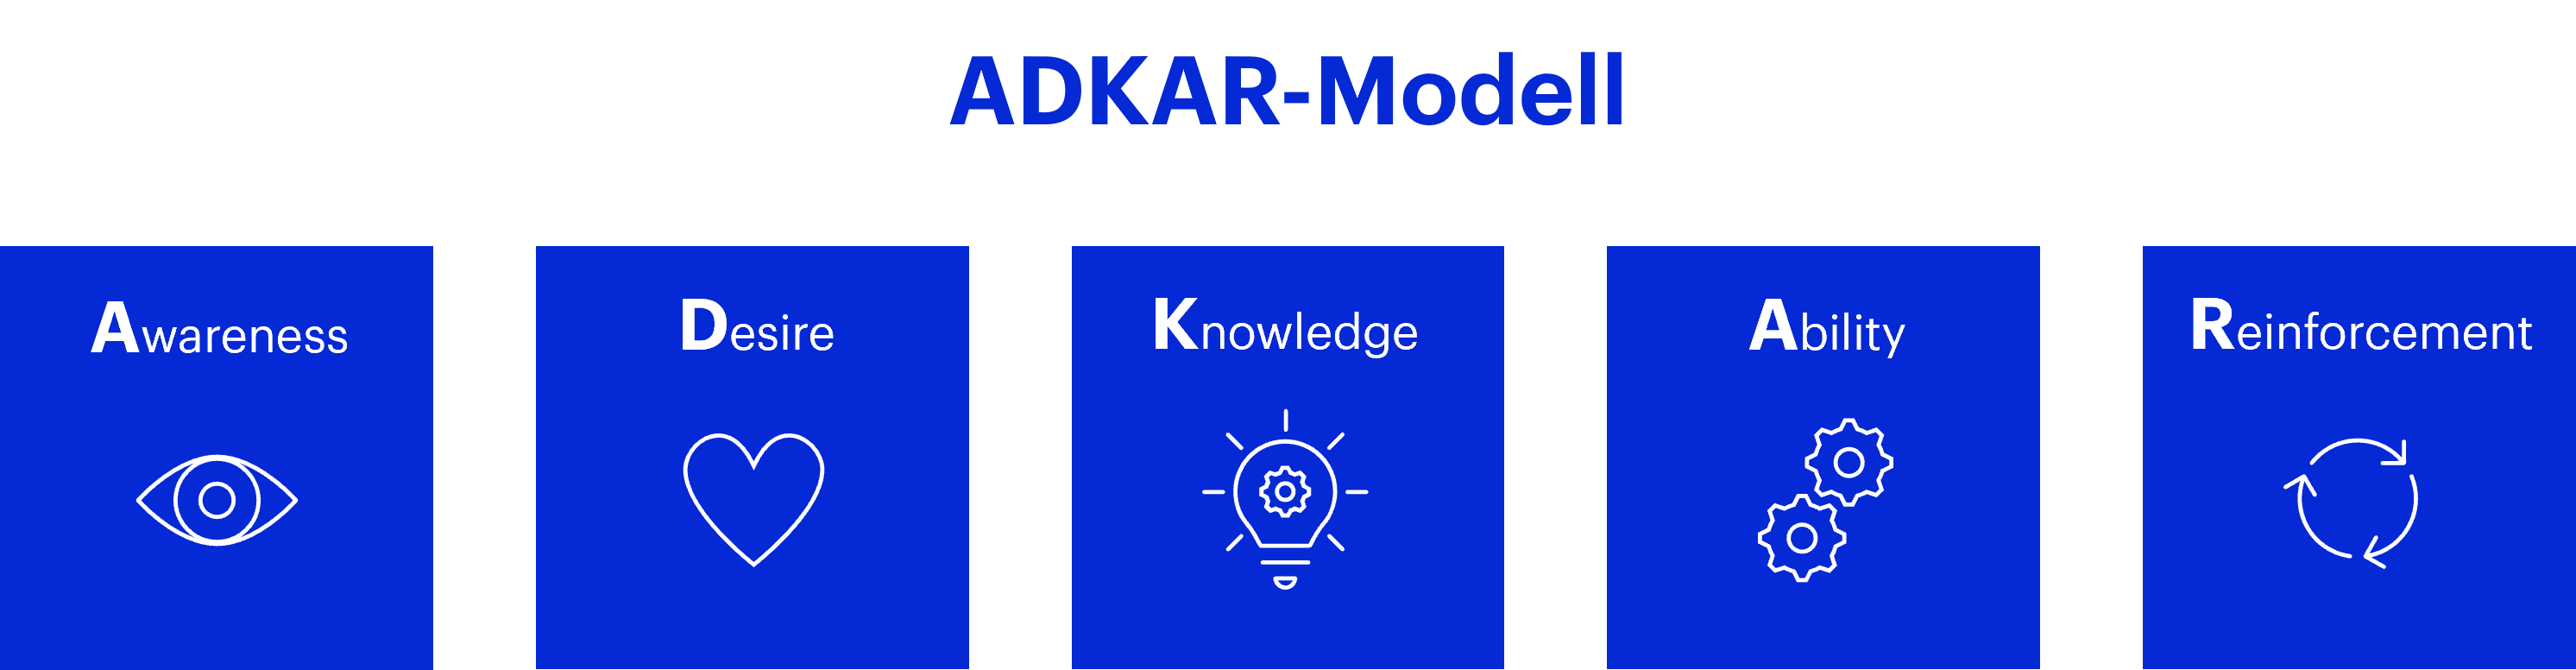 Das ADKAR-Modell zeigt einen idealtypischen Ablauf für das Change Management